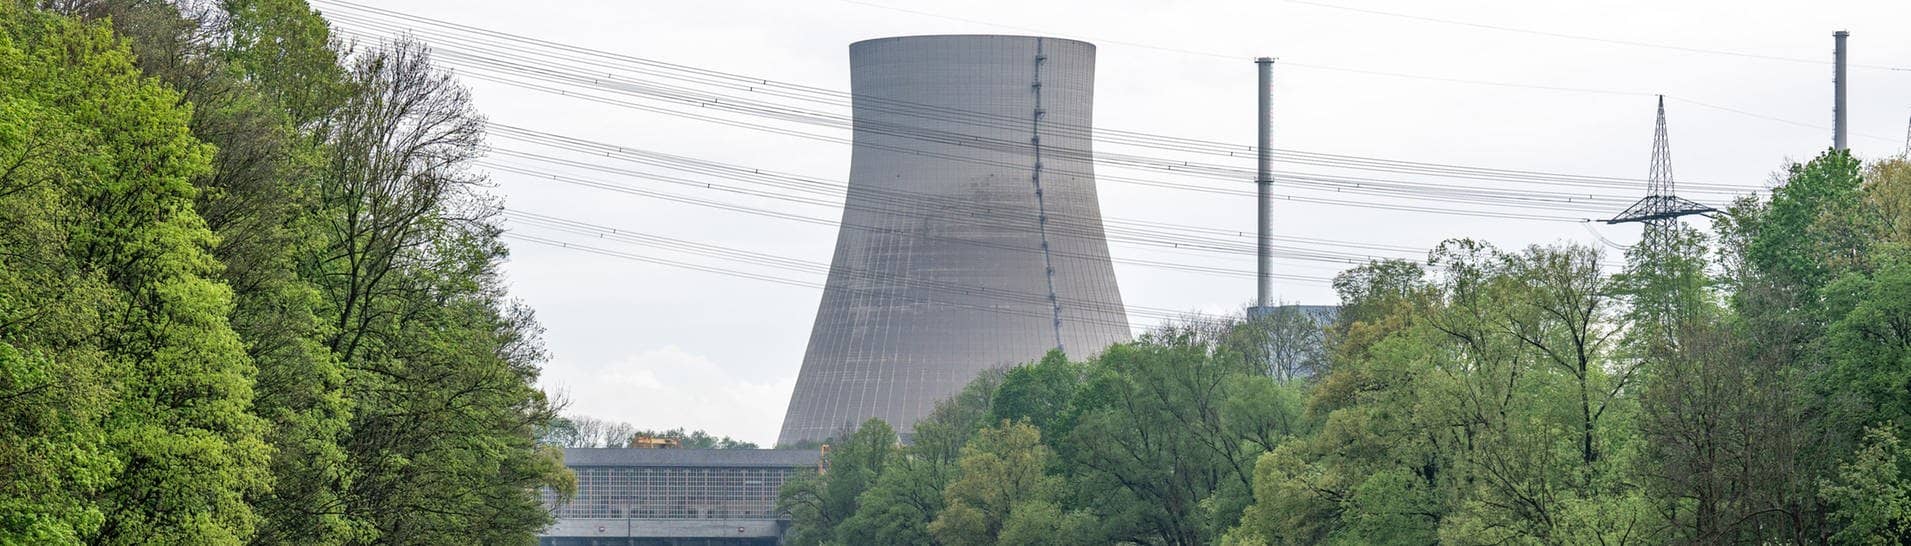 Der Kühlturm des stillgelegten Kernkraftwerks Isar 2.